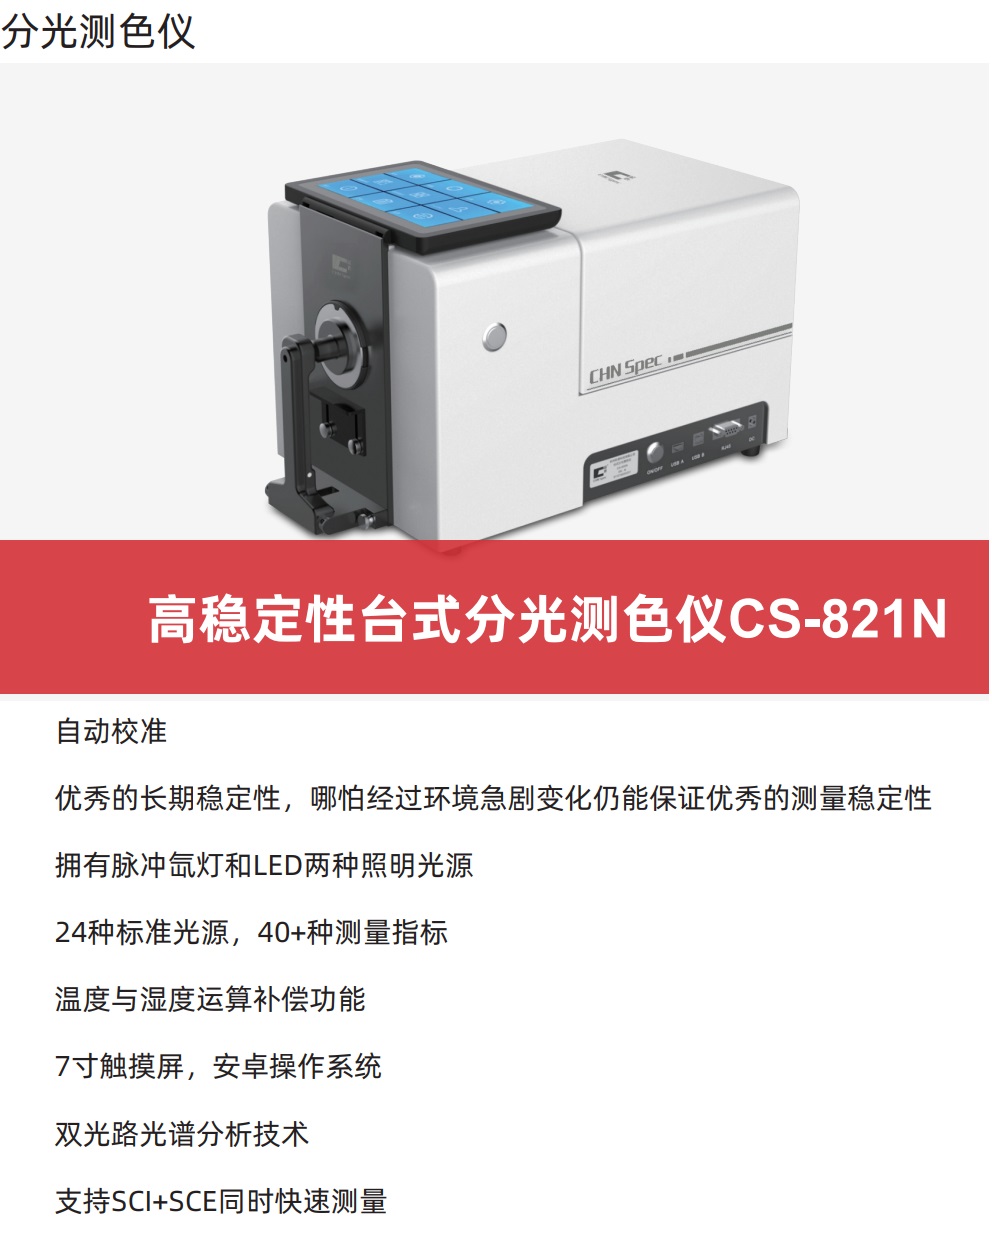 CS-821N台式分光测色仪